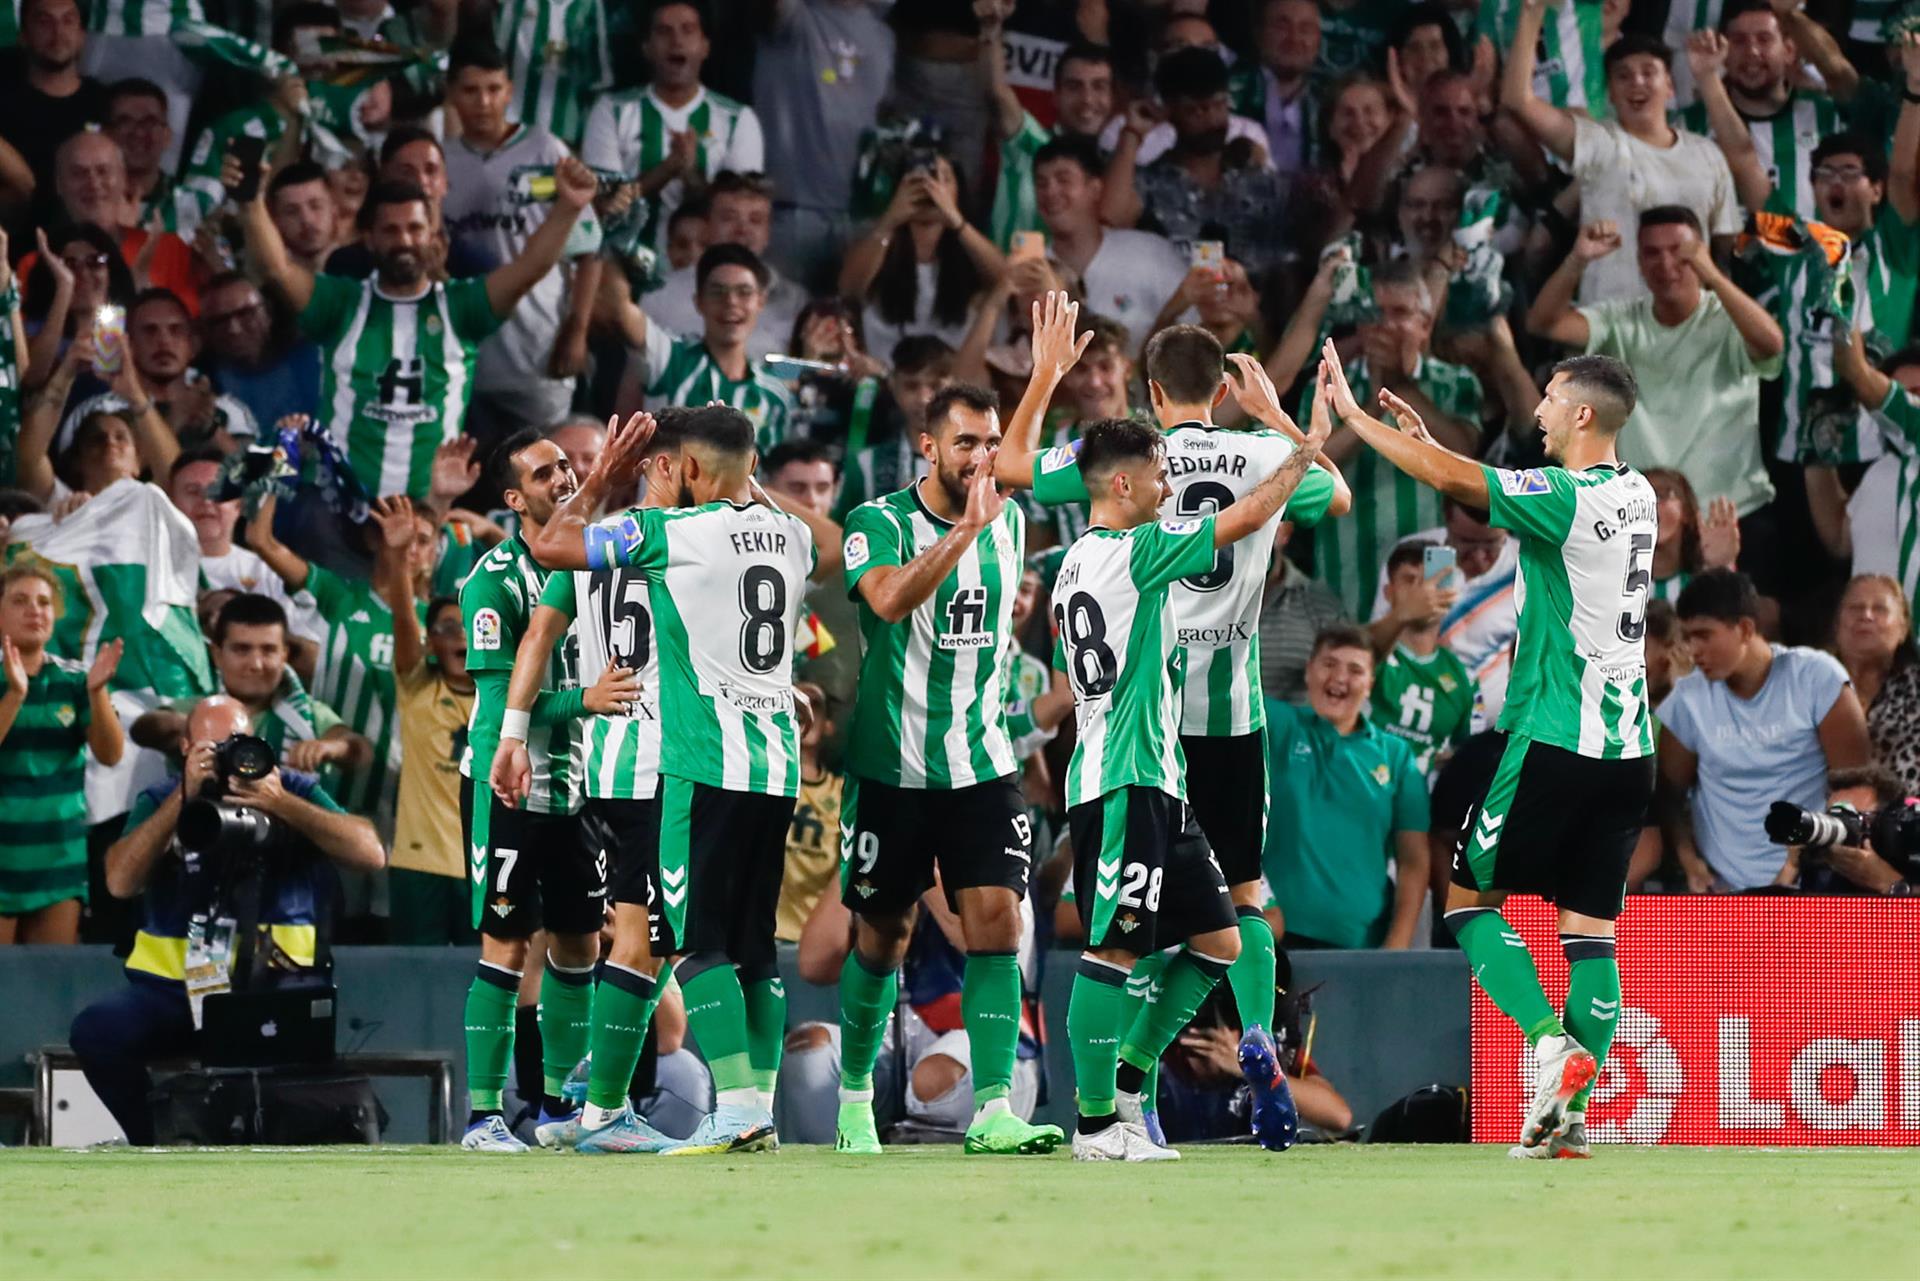 Los jugadores del Betis celebran el segundo gol de Juanmi Jiménez, tercero del equipo ante el Elche, durante el partido disputado en el estadio Benito Villamarín. EFE/José Manuel Vida